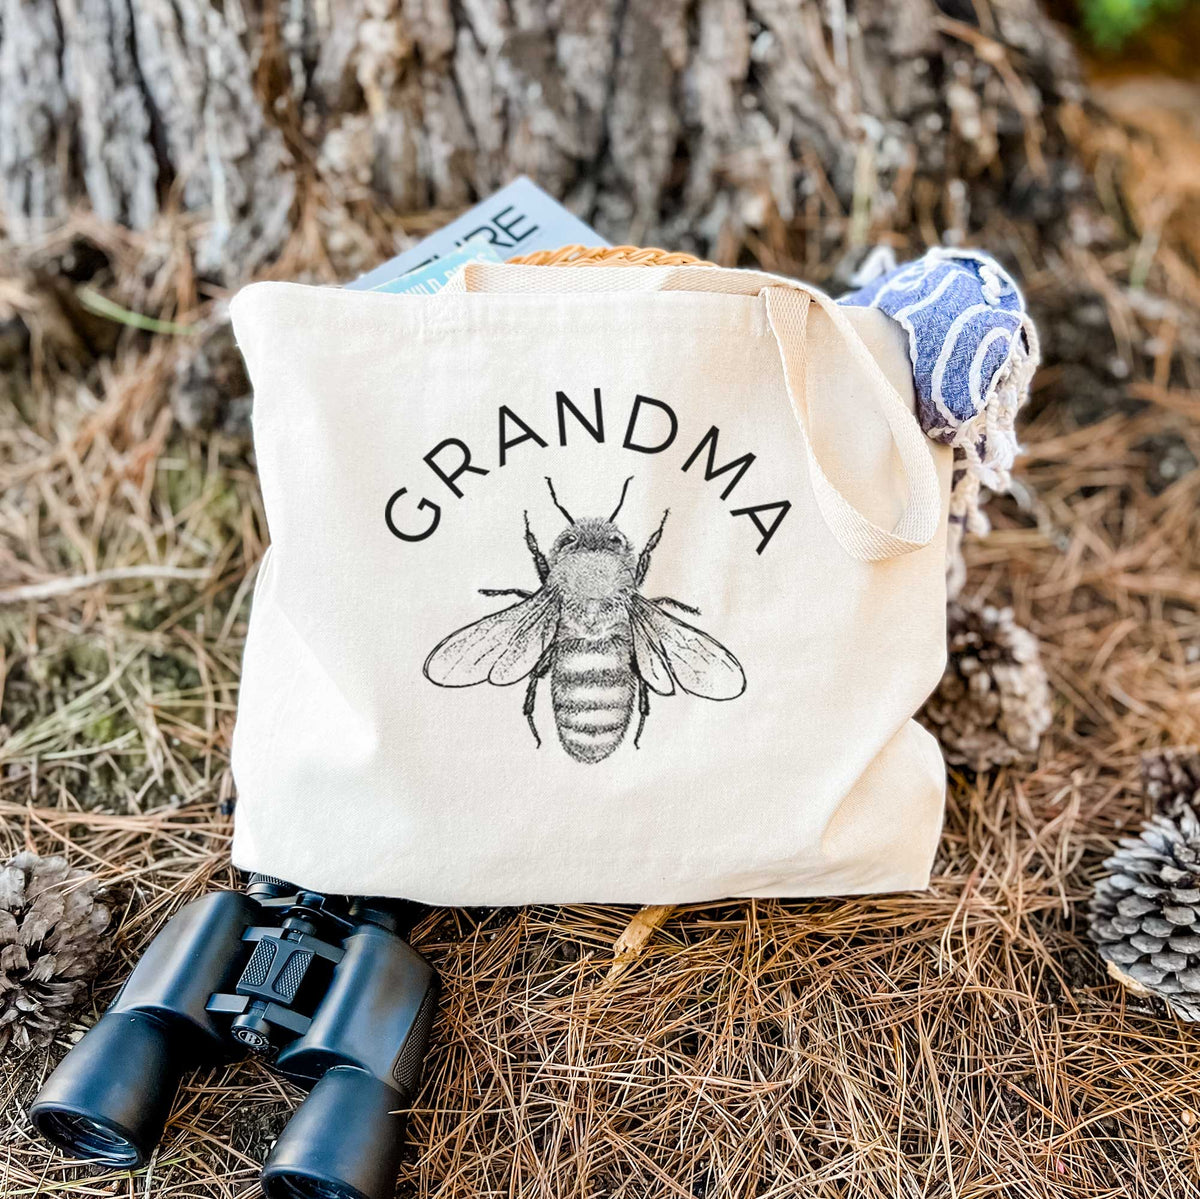 Grandma Bee - Tote Bag